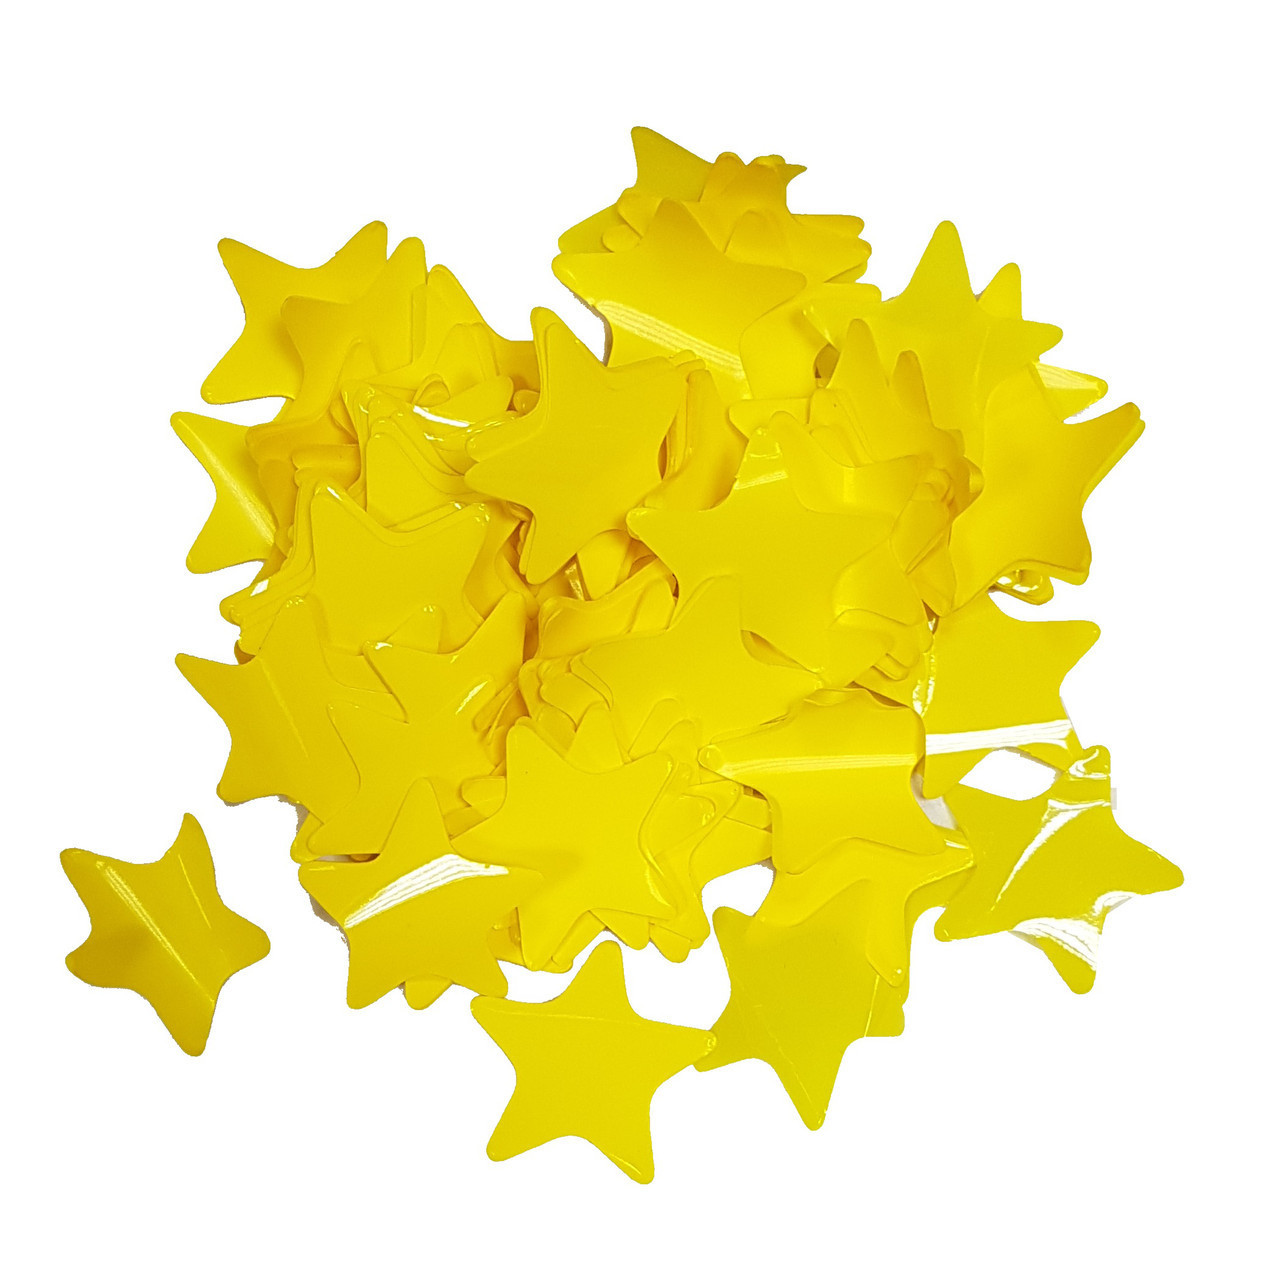 Конфеті зірочки, жовті, 10 грамів 2113